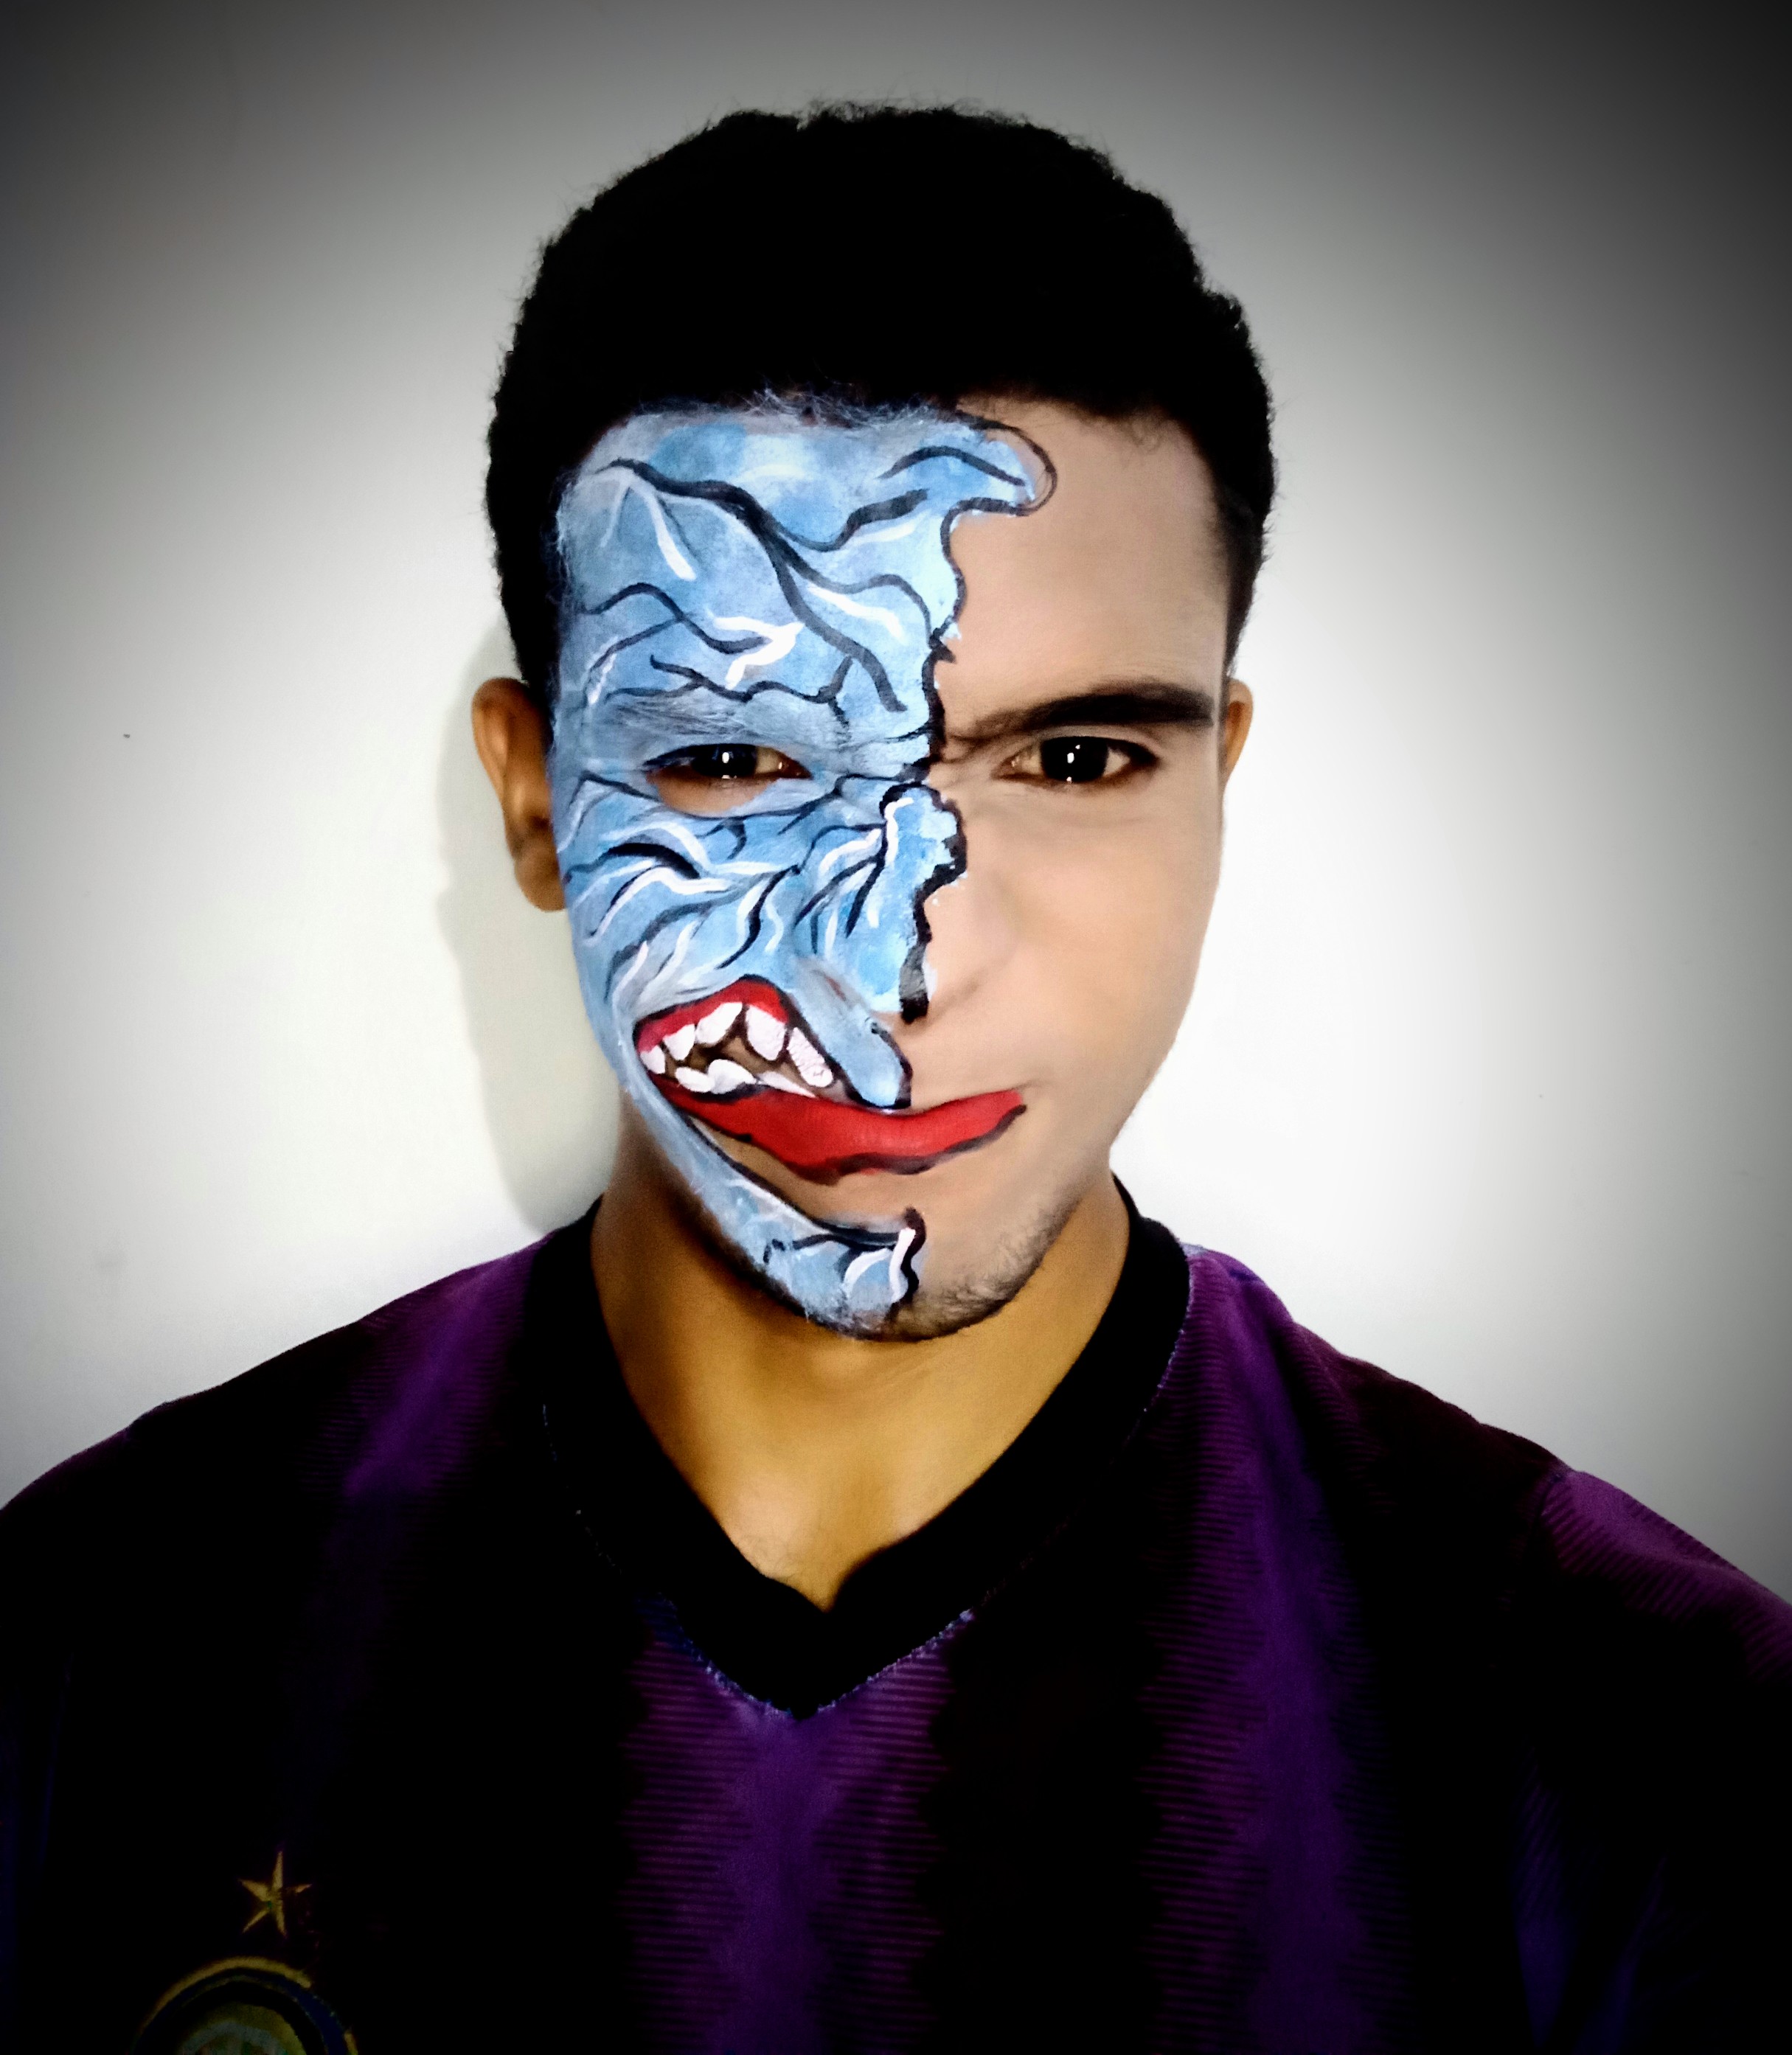 Artistic Batman Half Face Makeup - Maquillaje artístico de media cara de  Batman by @alexiscova — Hive